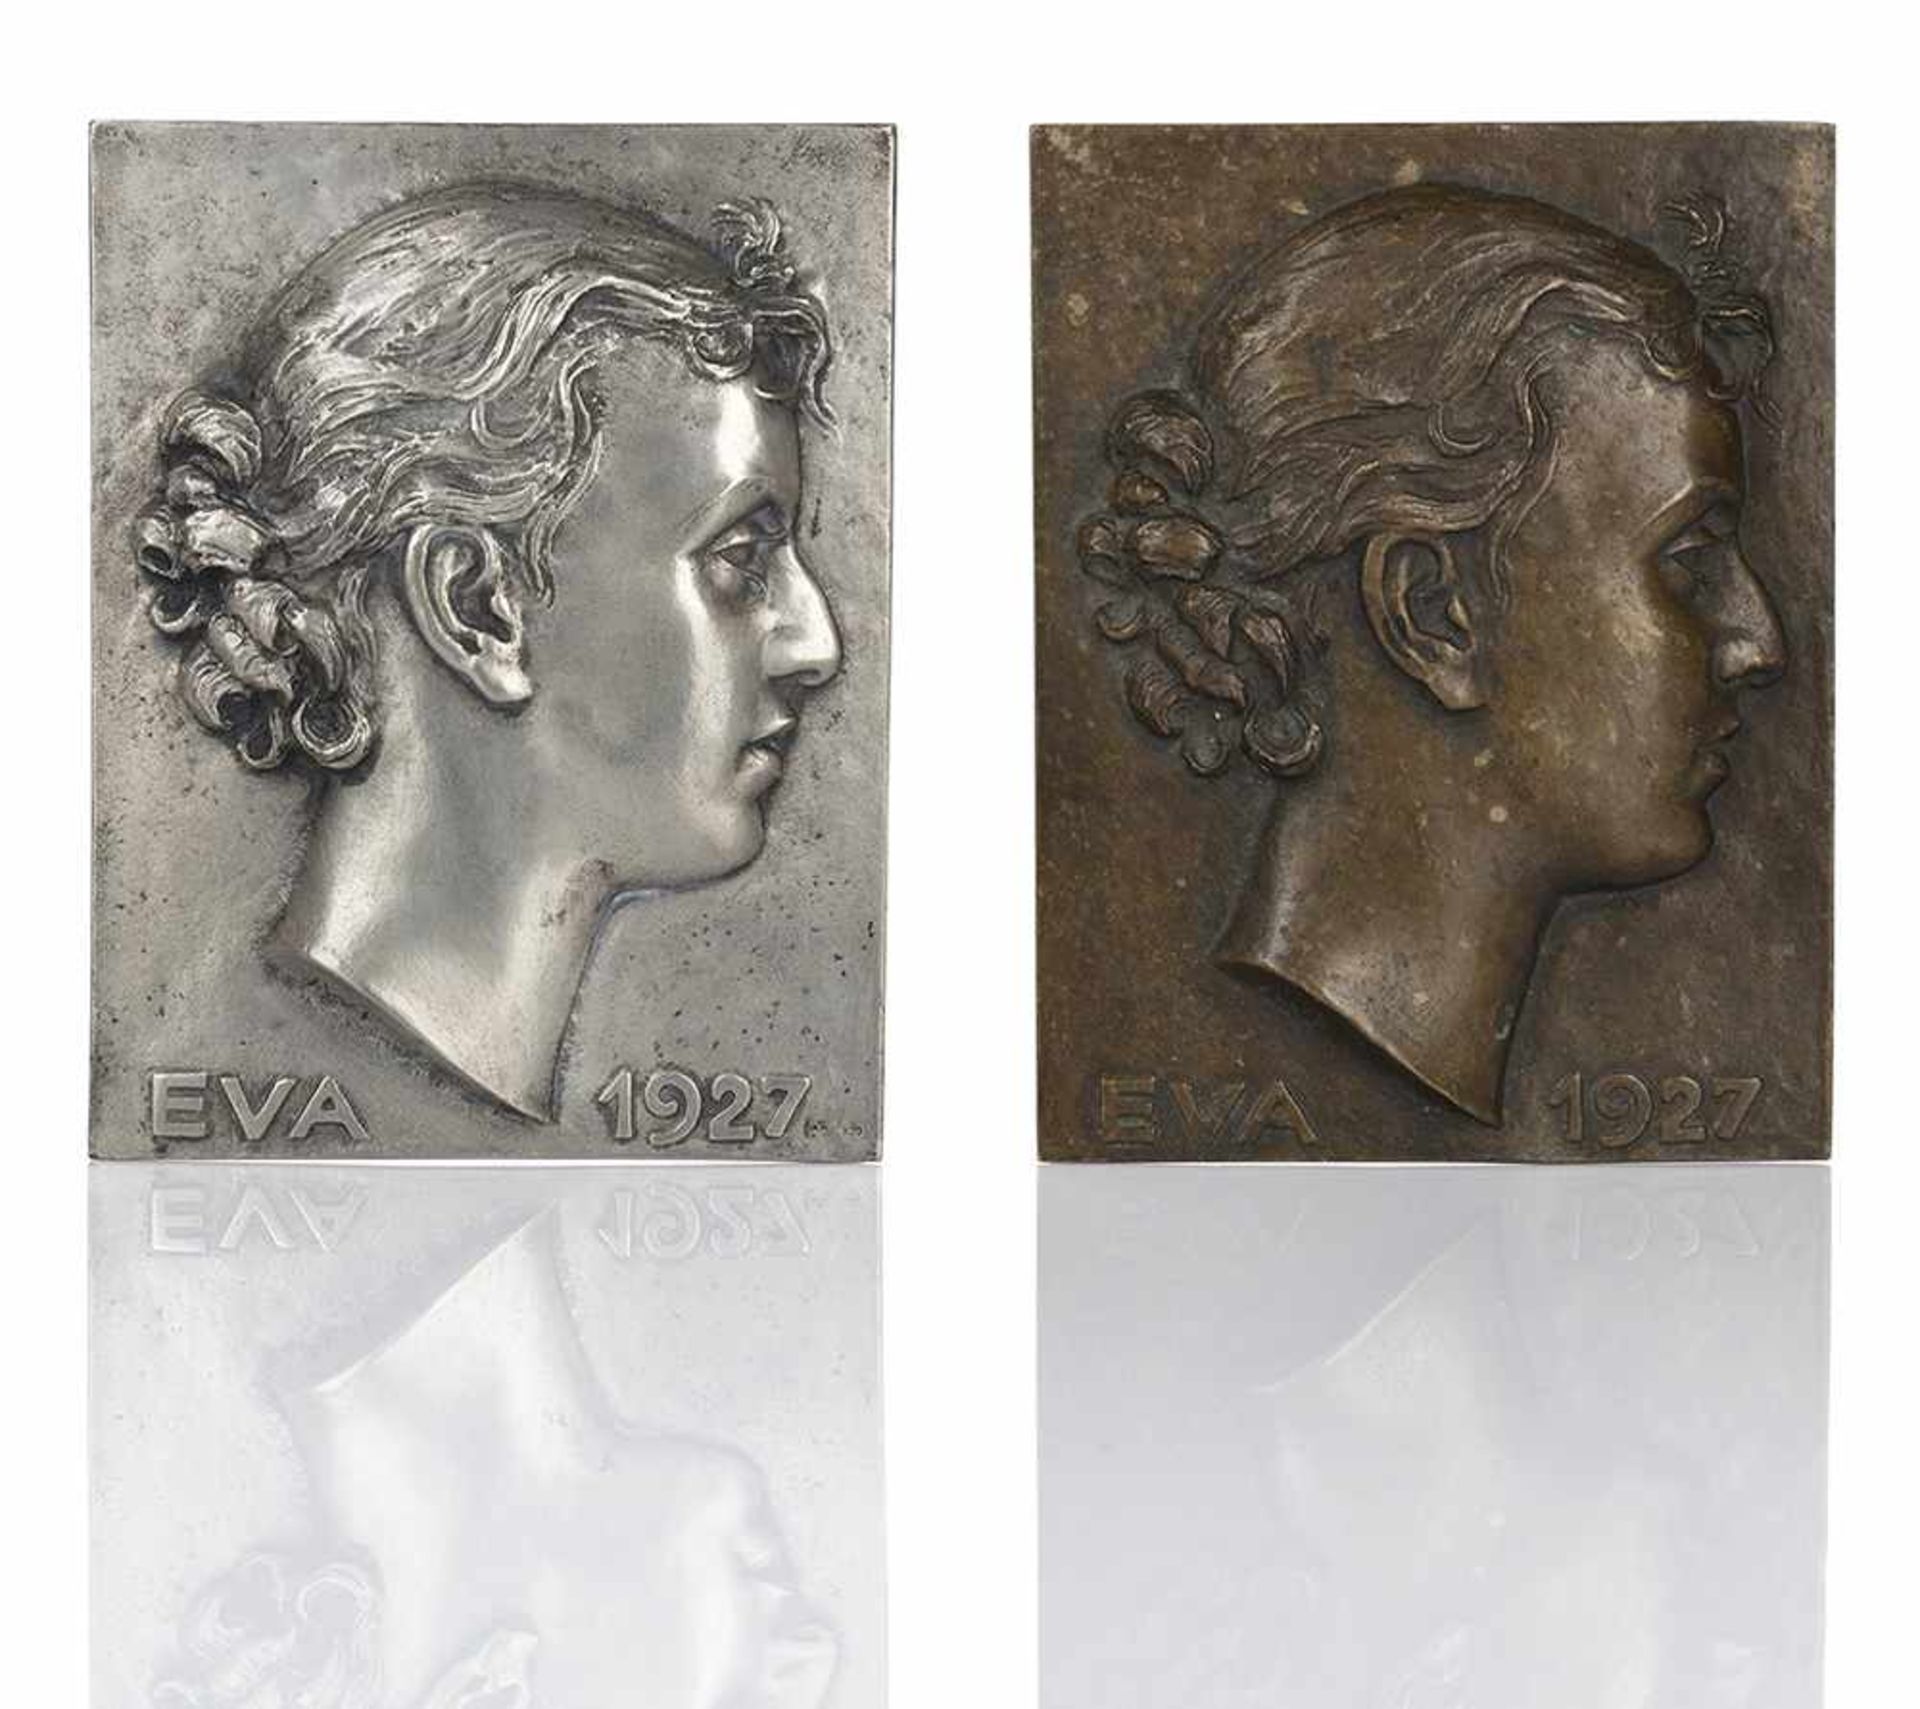 Fehrle, Jakob WilhelmSchwäbisch Gmünd, 1884 - 1974Je 14,5 x 11,2cm2 Arbeiten: "Eva", 1927. Ein